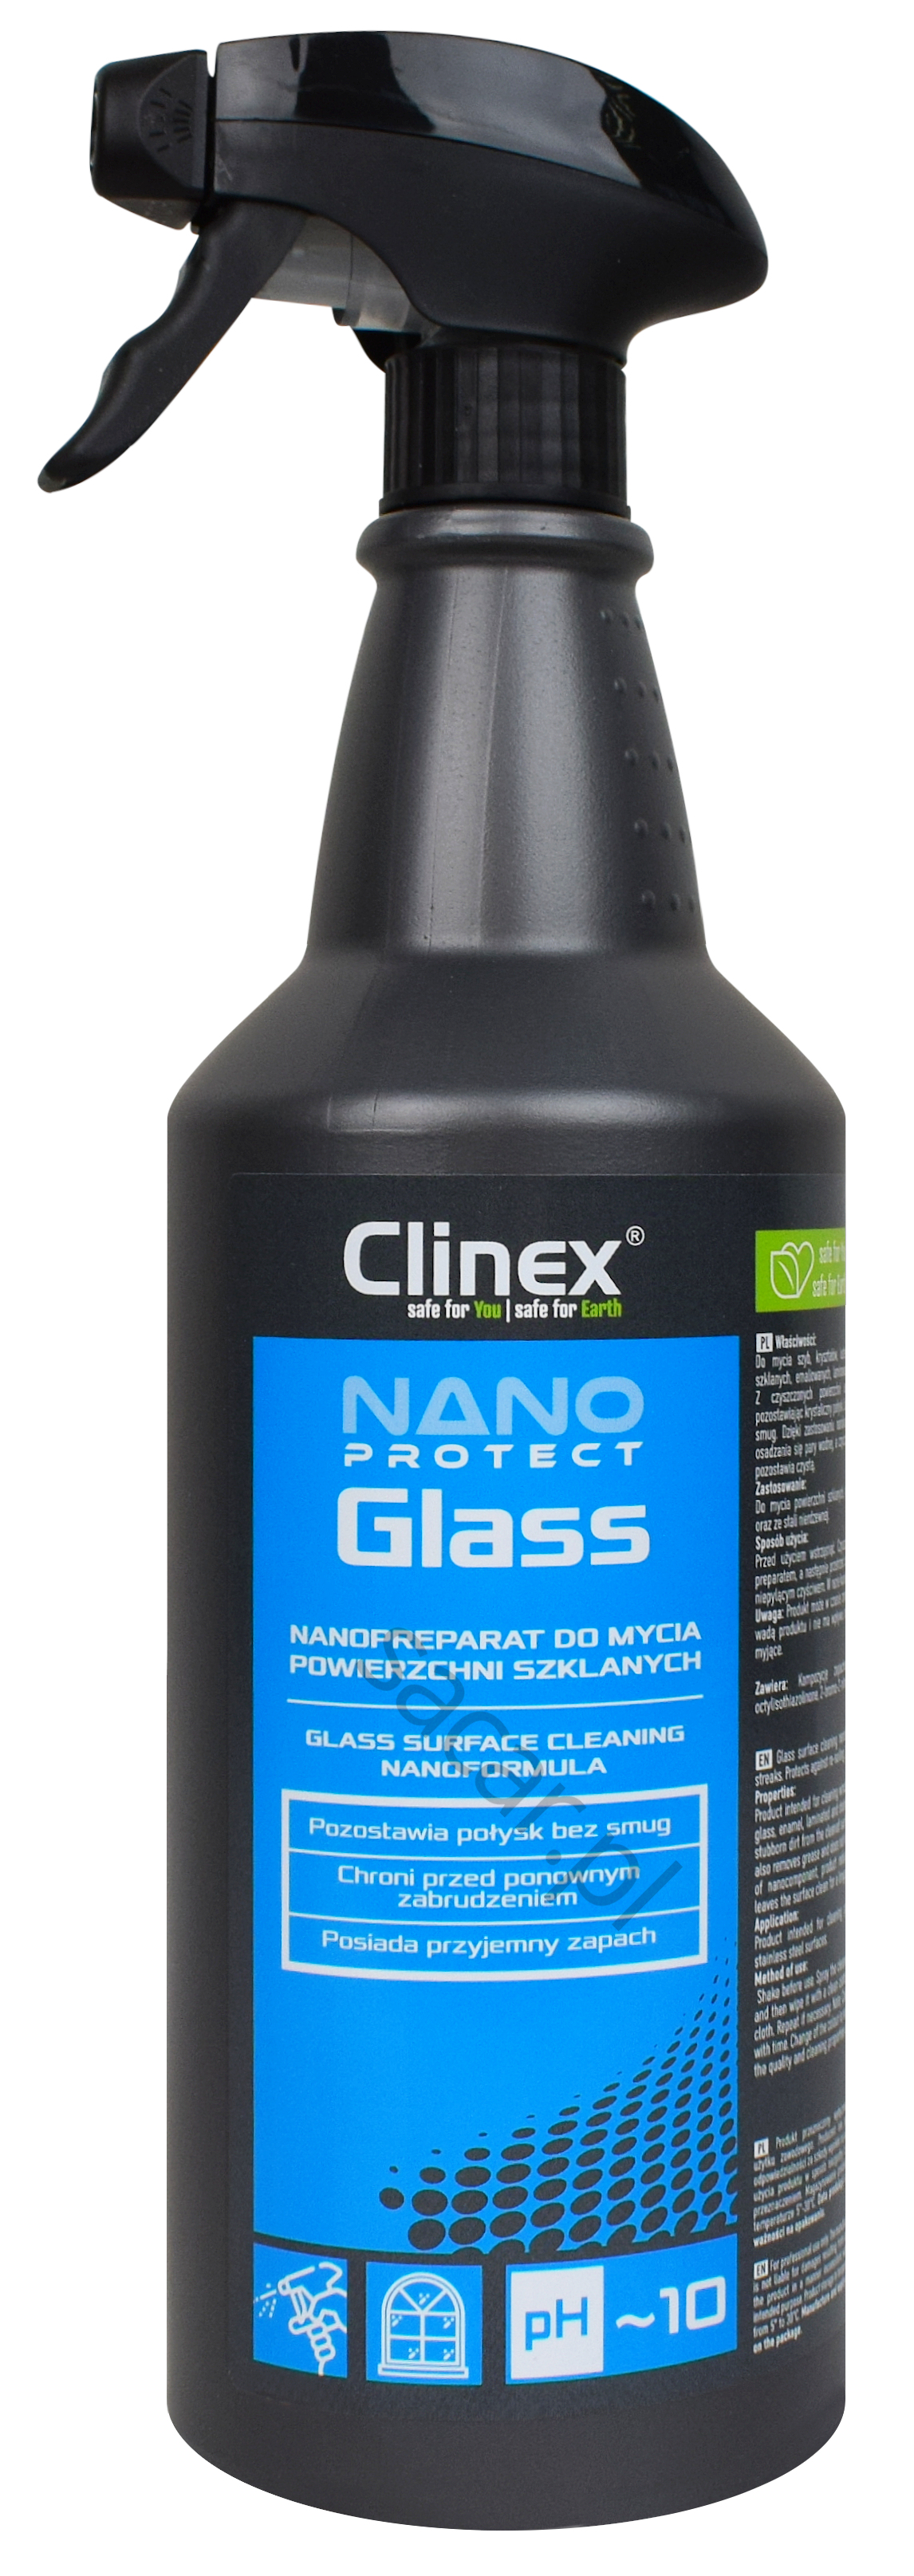 Clinex Nano Protect Glass 1l